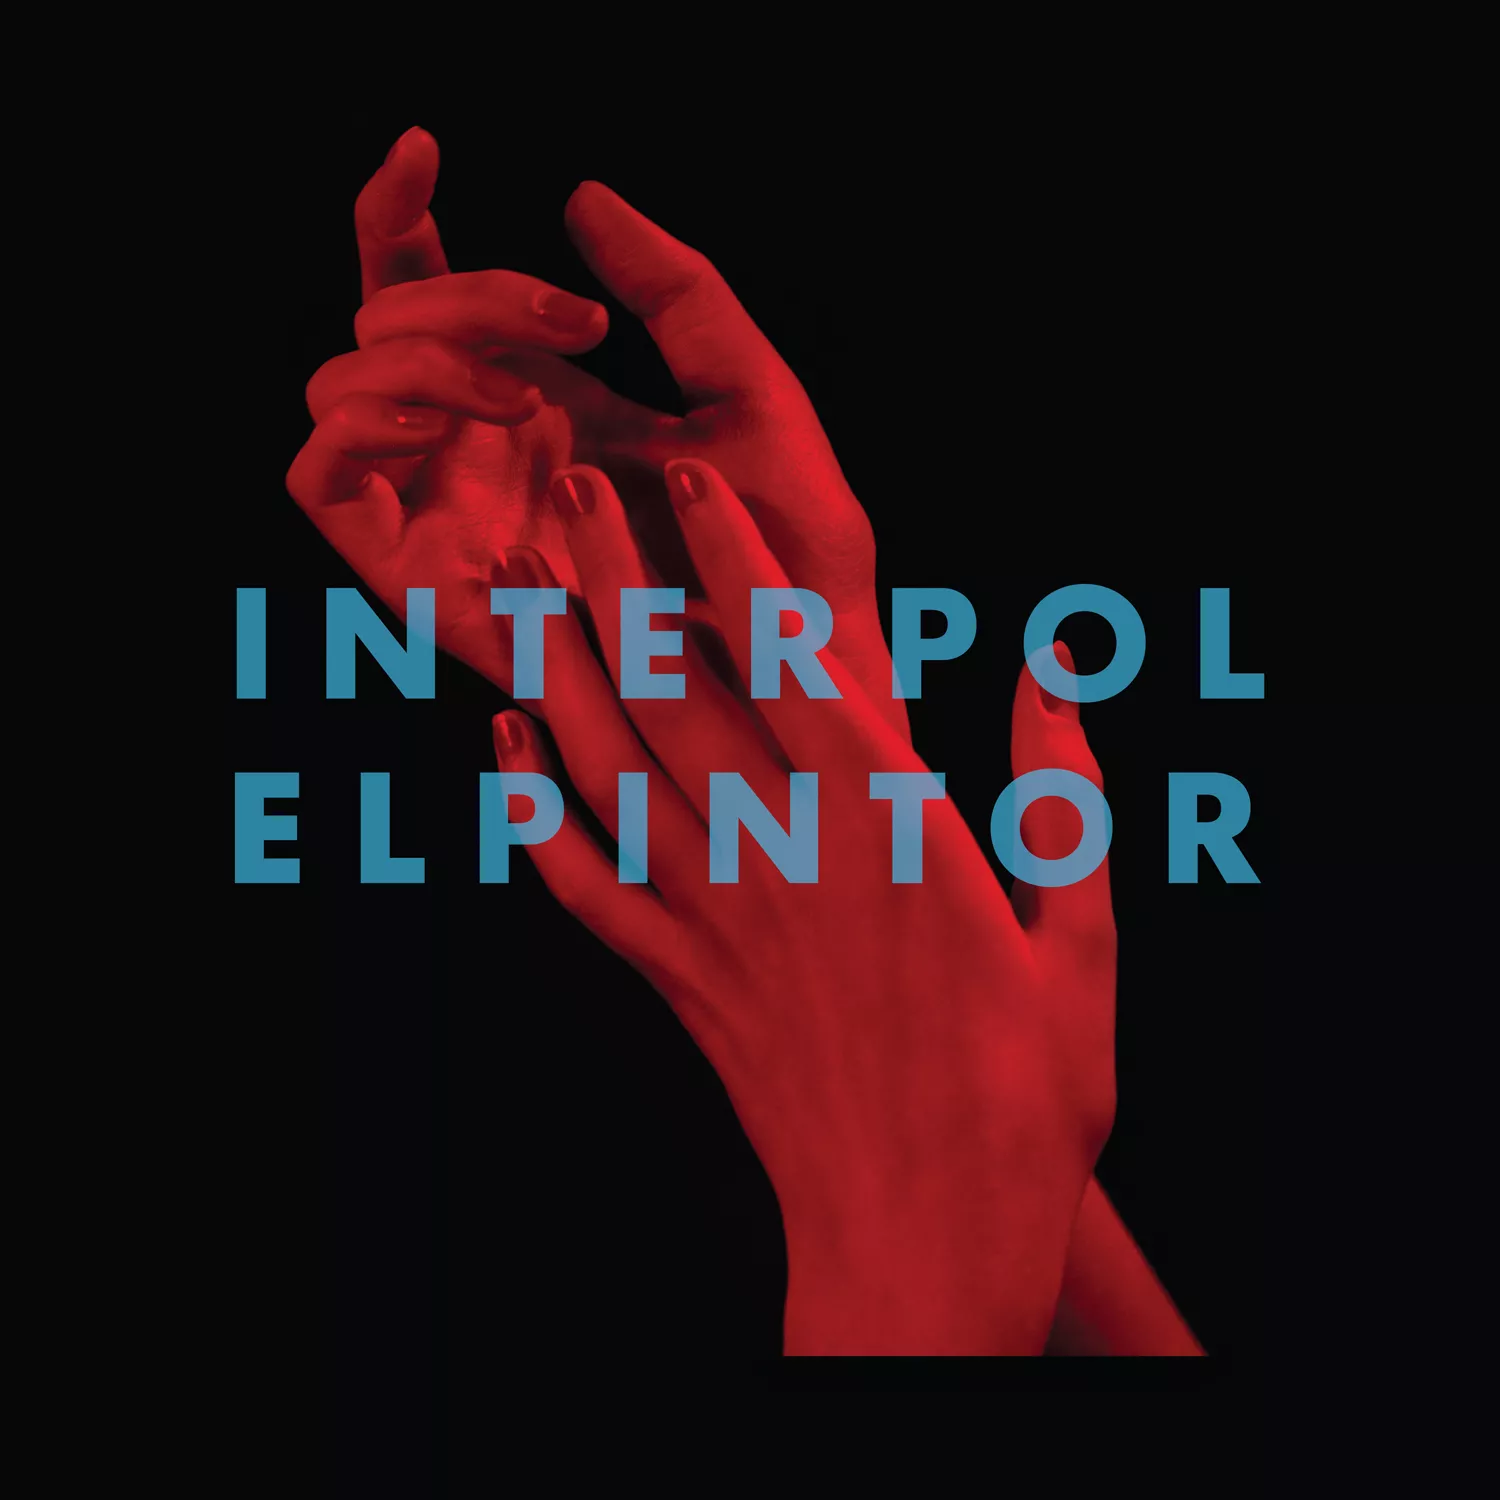 El Pintor - Interpol